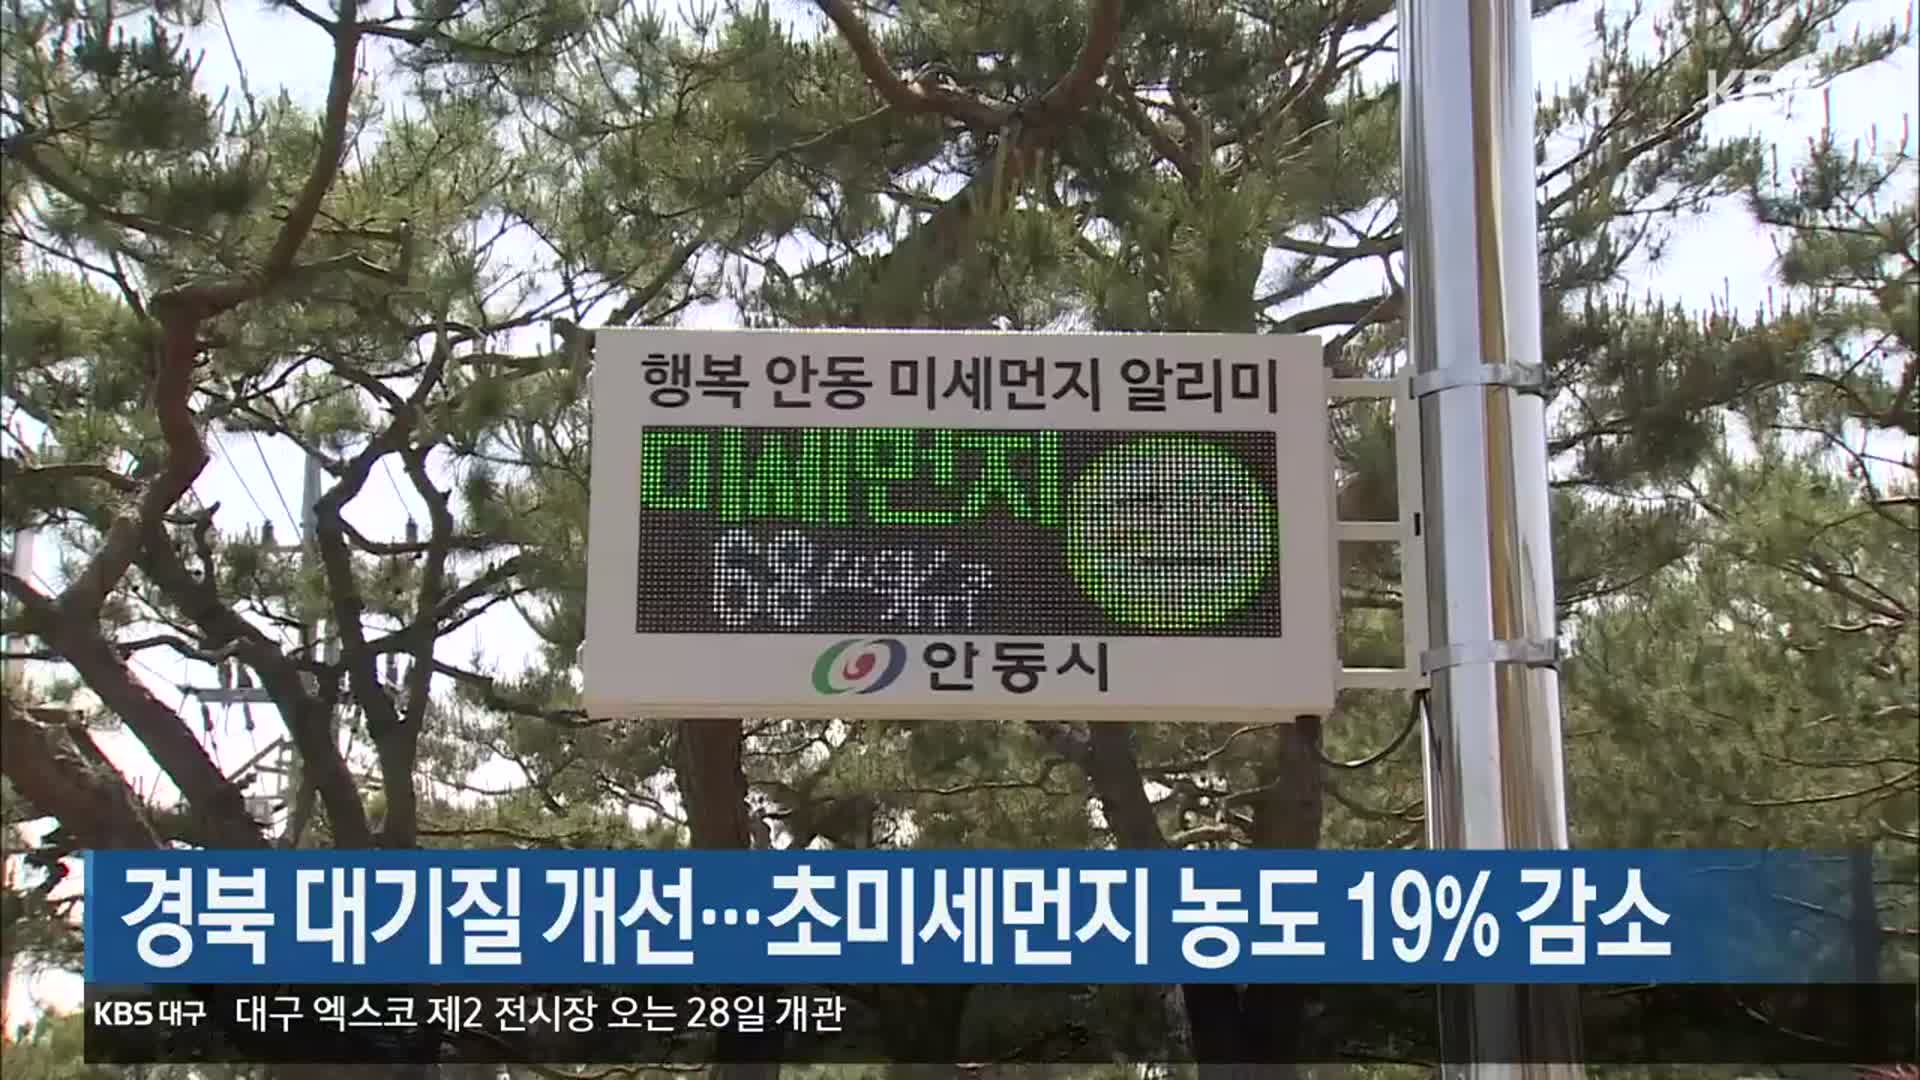 경북 대기질 개선…초미세먼지 농도 19% 감소